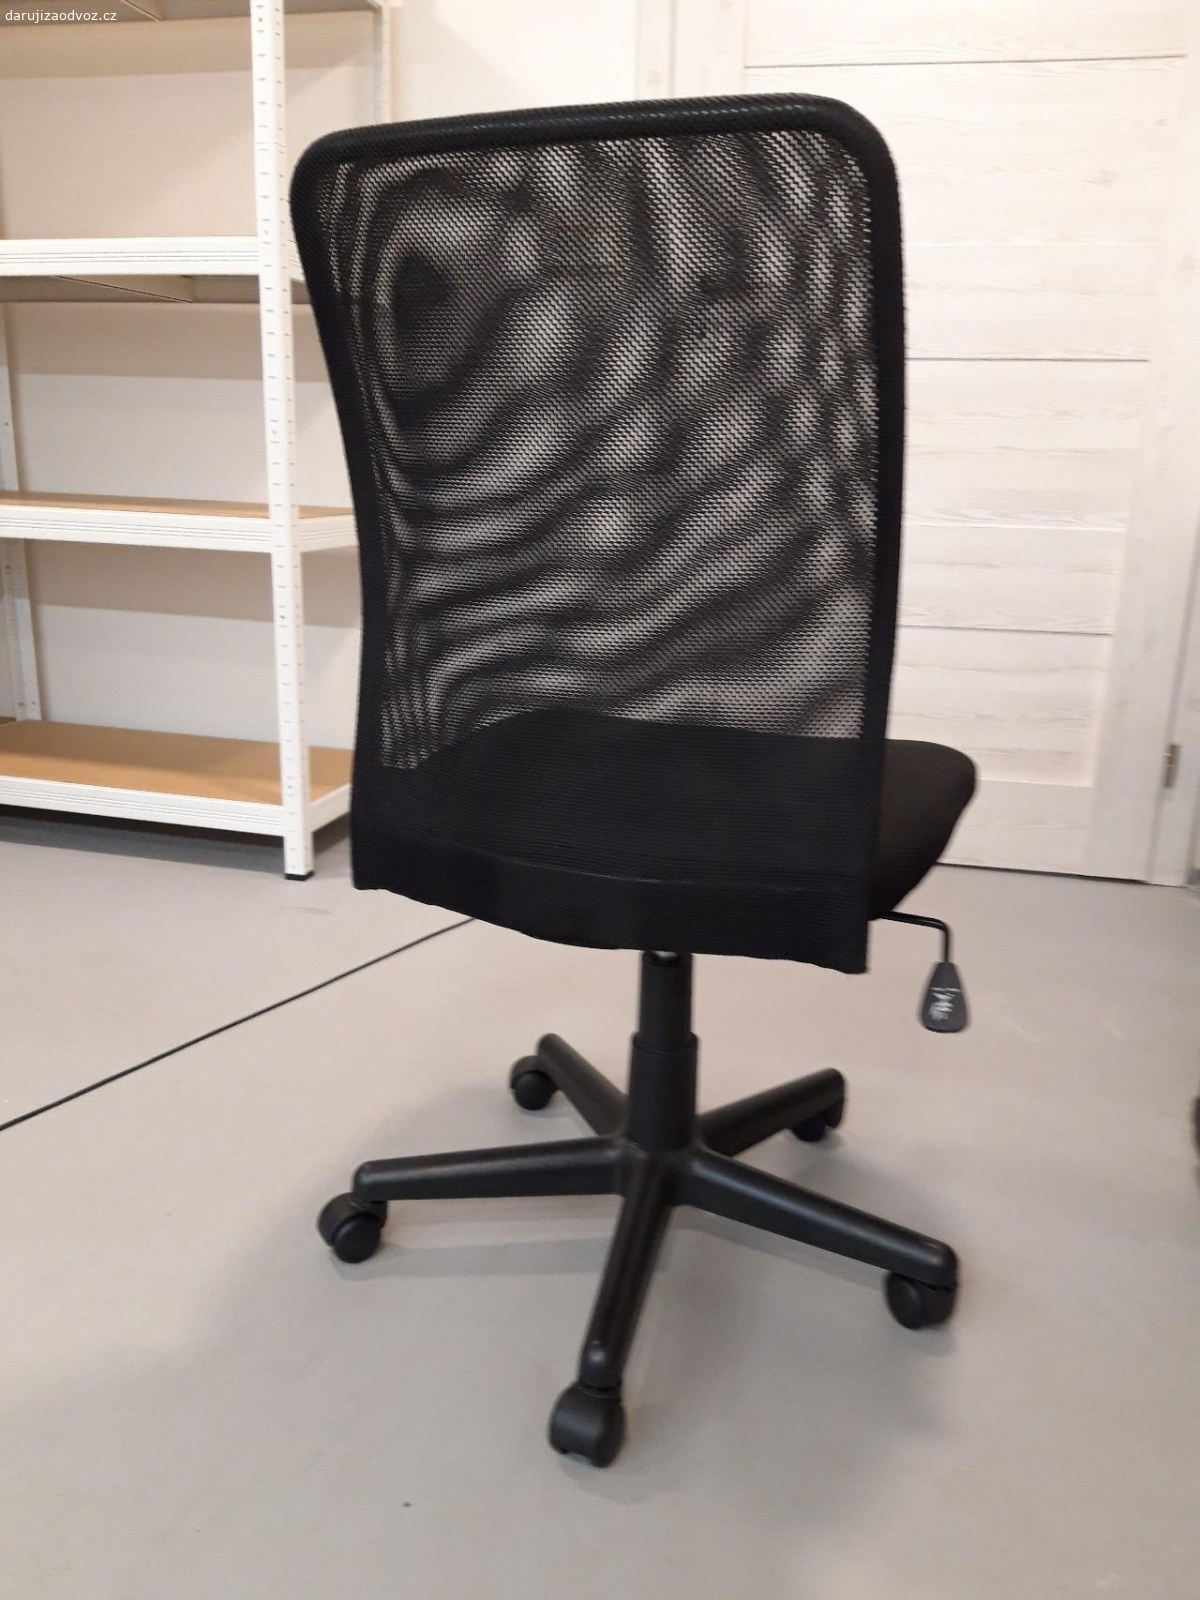 Kancelářská židle. černá kancelářská židle, otočná, plast, textil